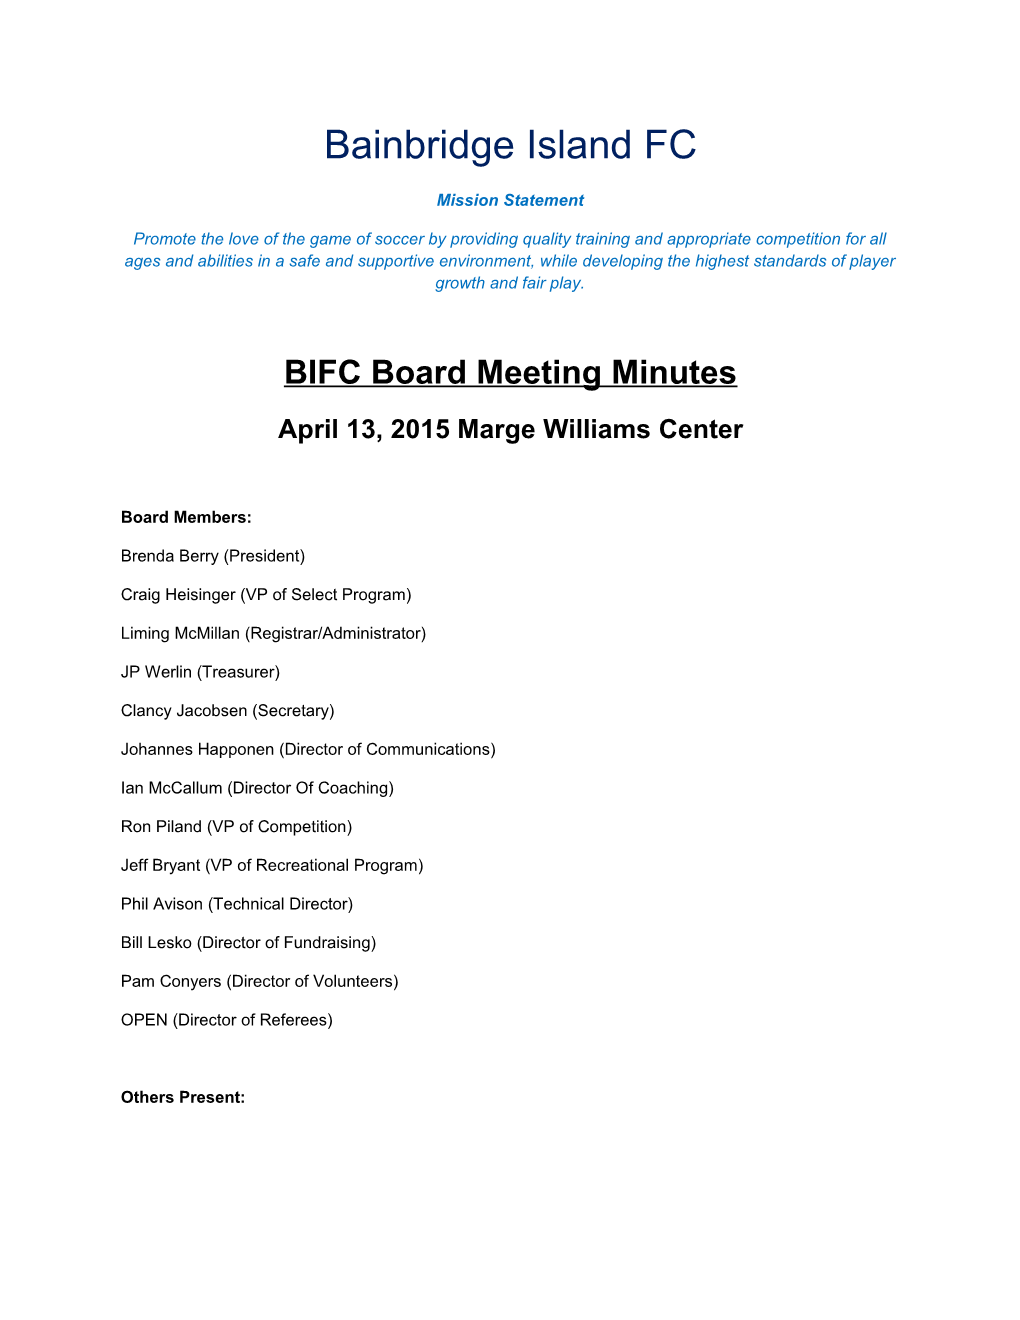 BIFC Board Meeting Minutes